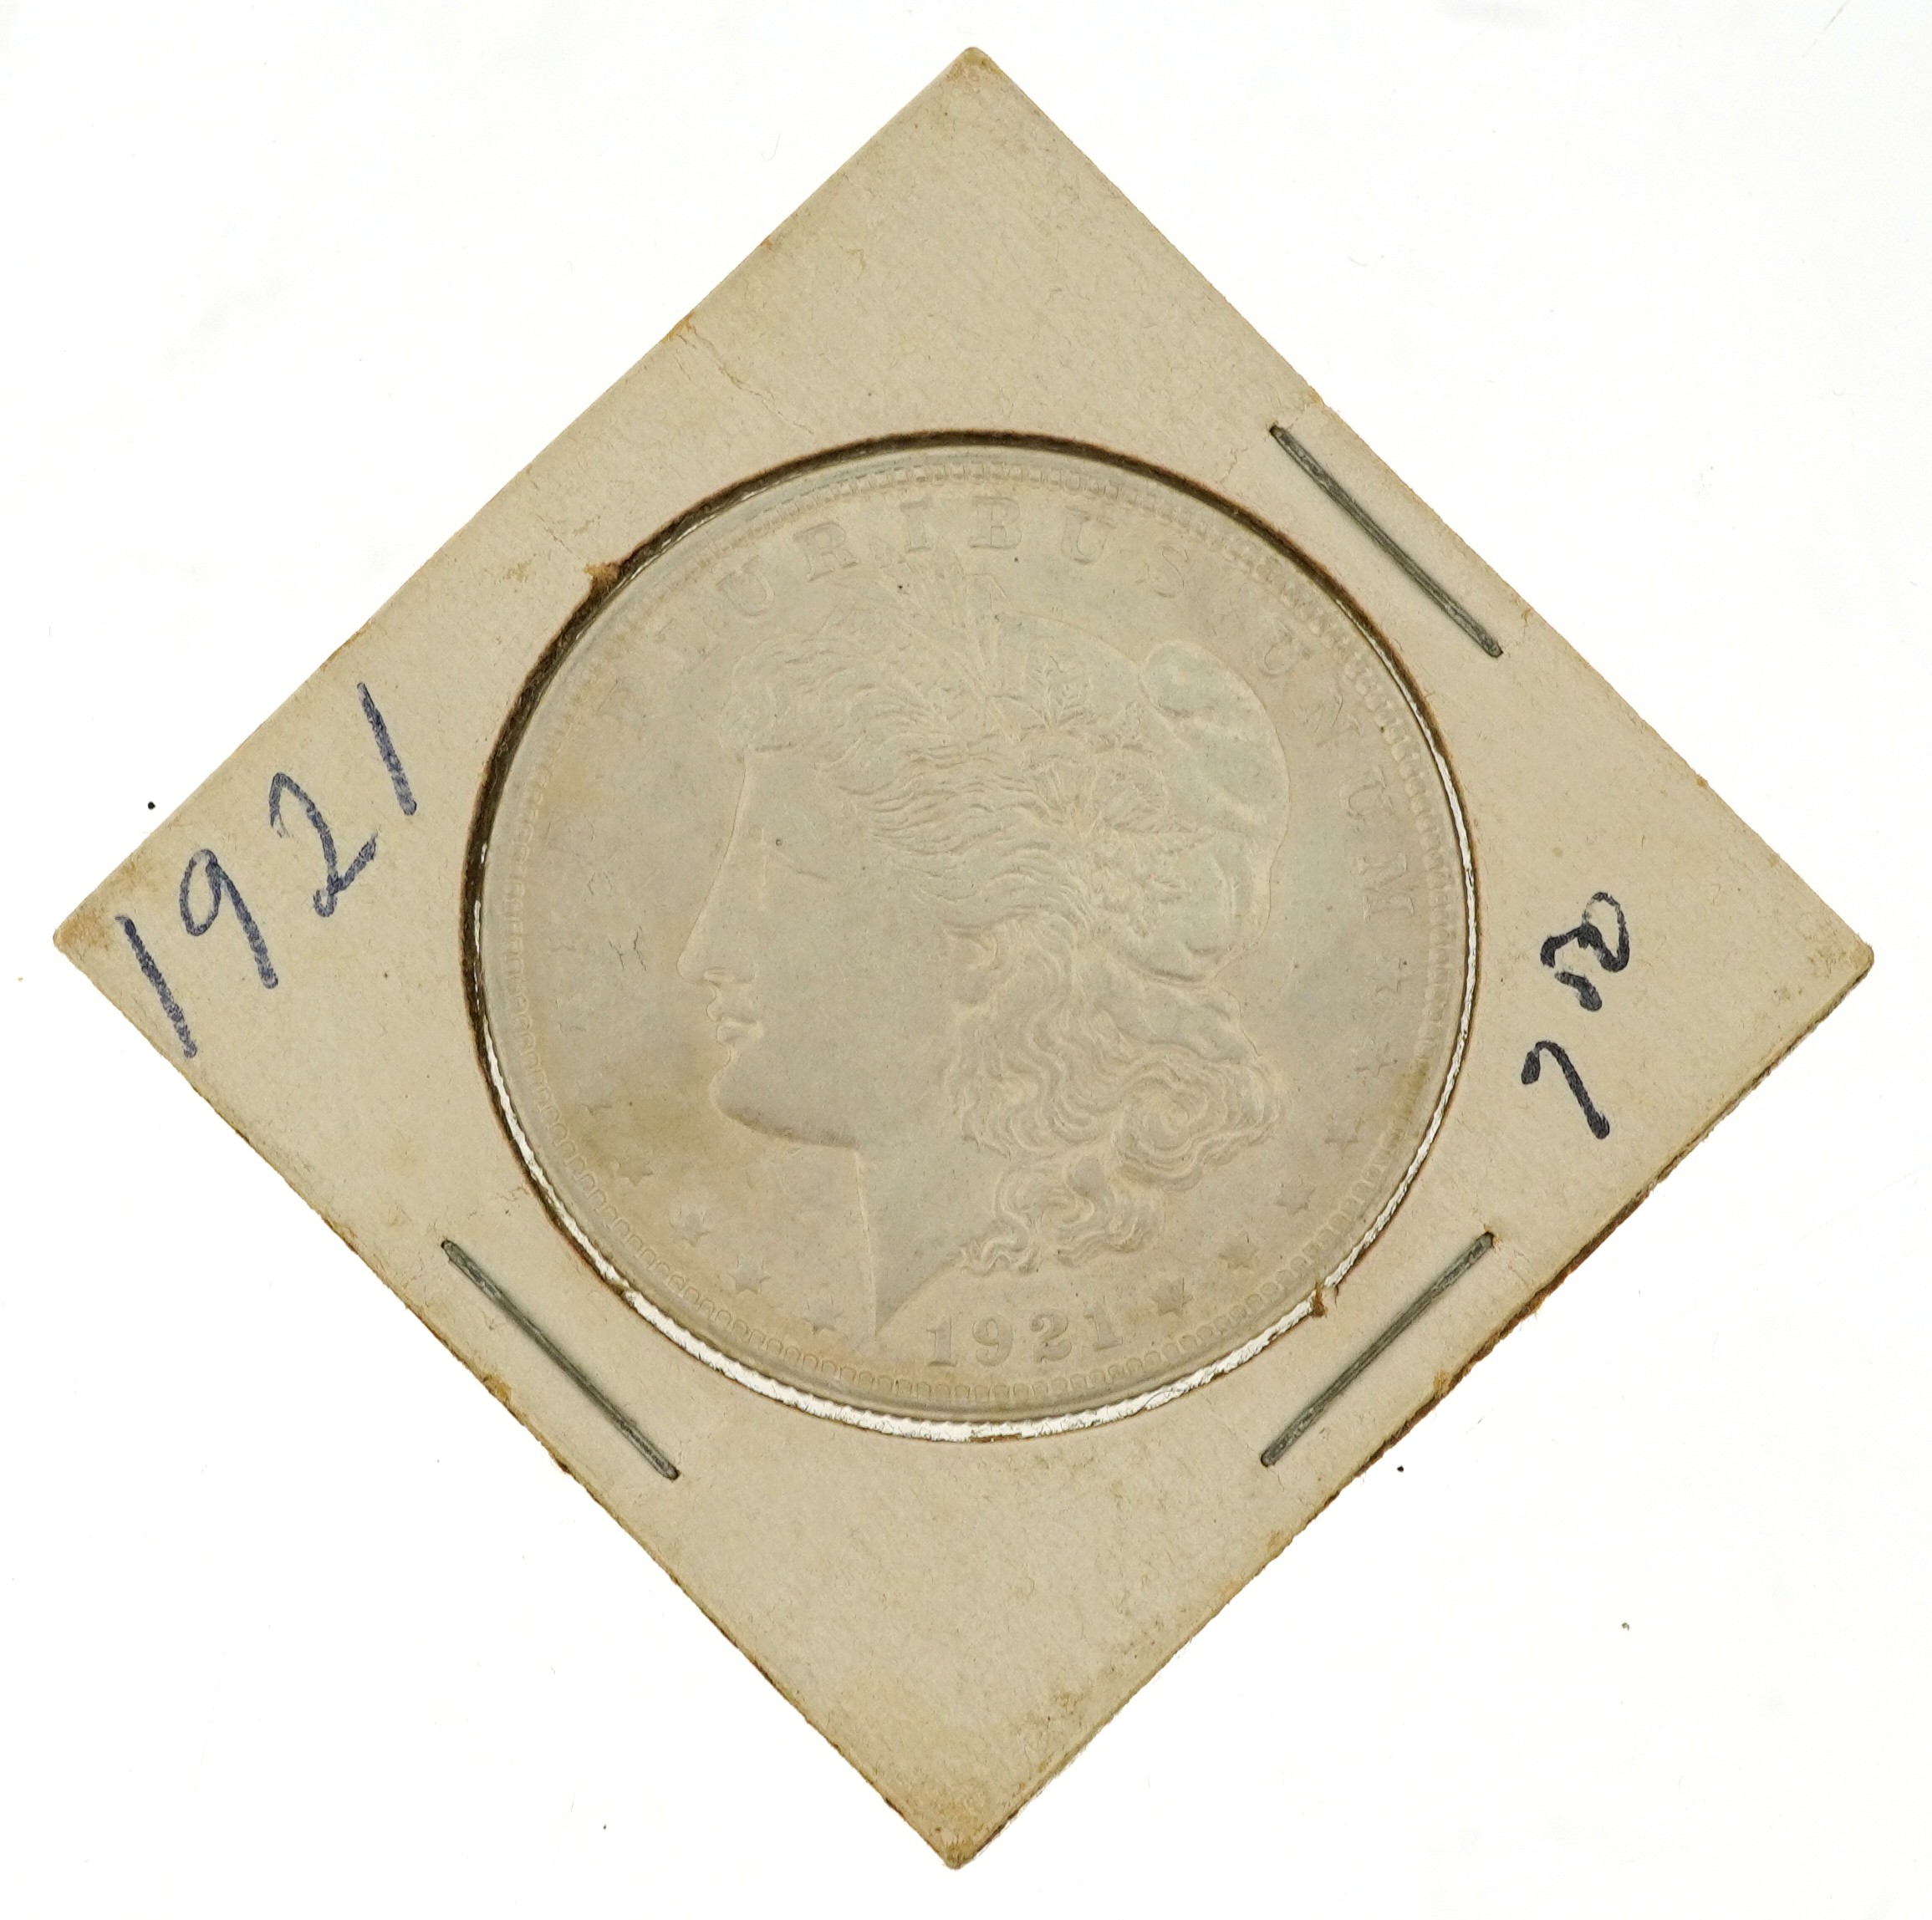 1921 American silver one dollar